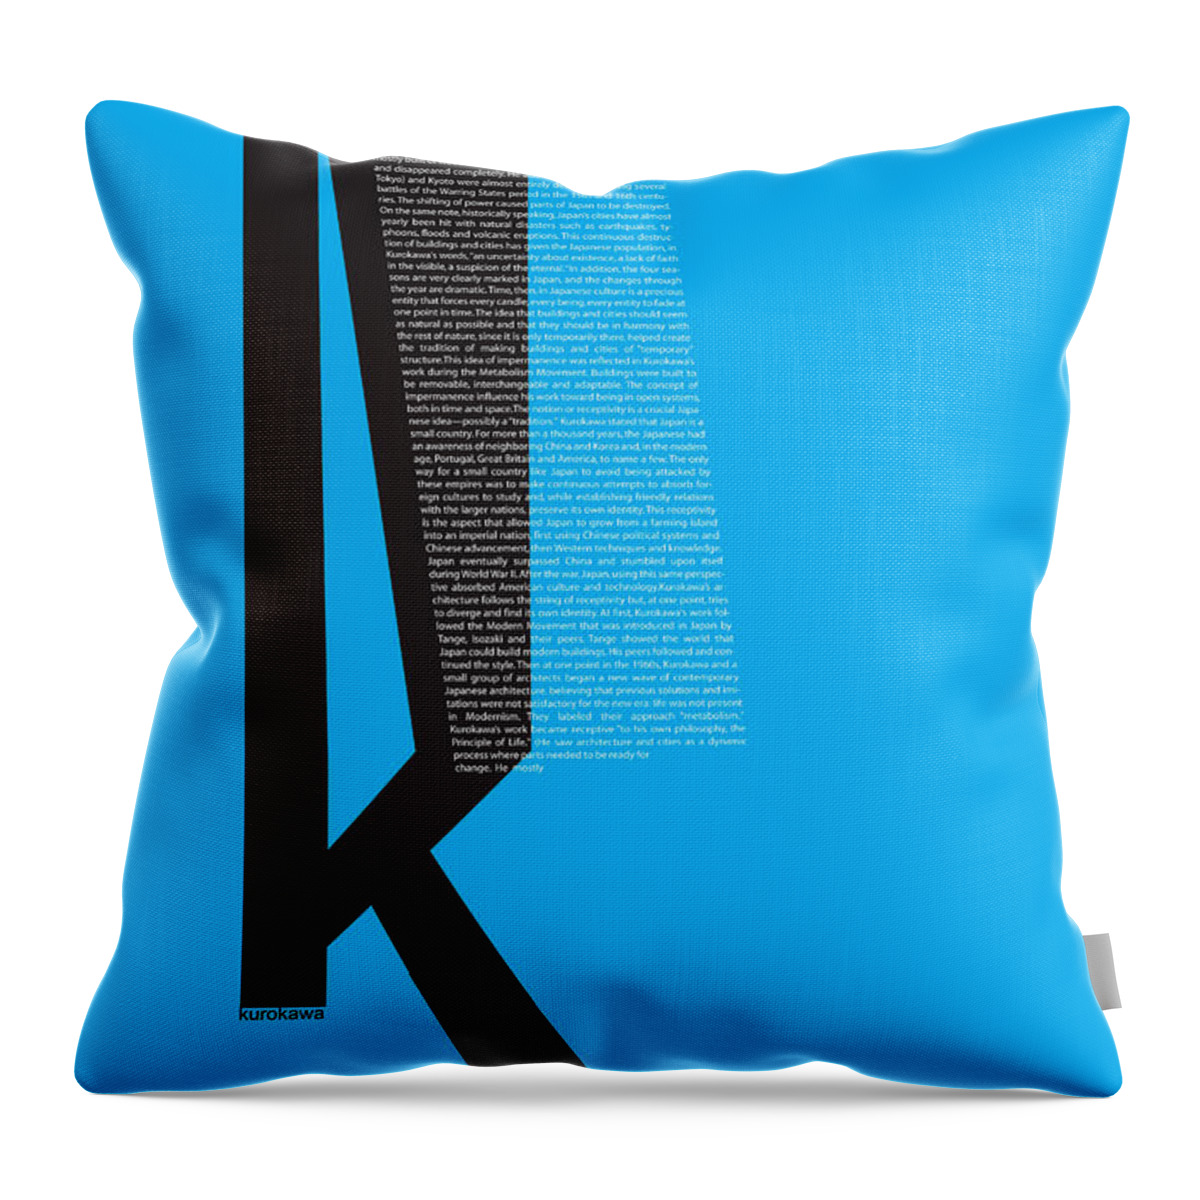 Kurosawa Throw Pillow featuring the digital art Kurosawa Poster by Naxart Studio